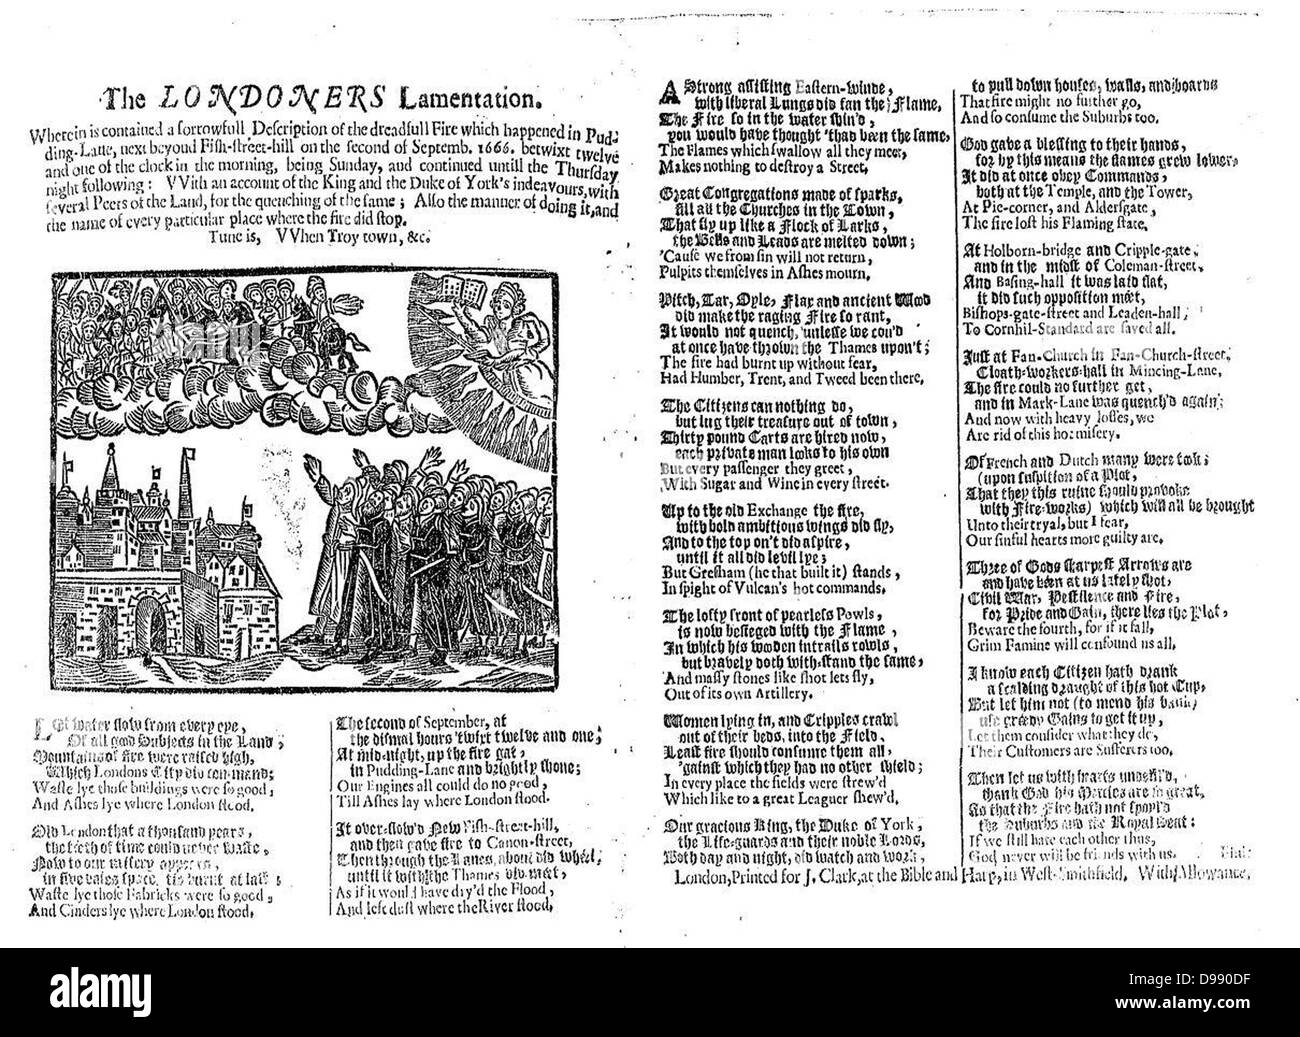 Les Londoniens de gémissements. Un 17e siècle) by décrivant la tragédie du "Grand Feu" de Londres en 1666 Banque D'Images